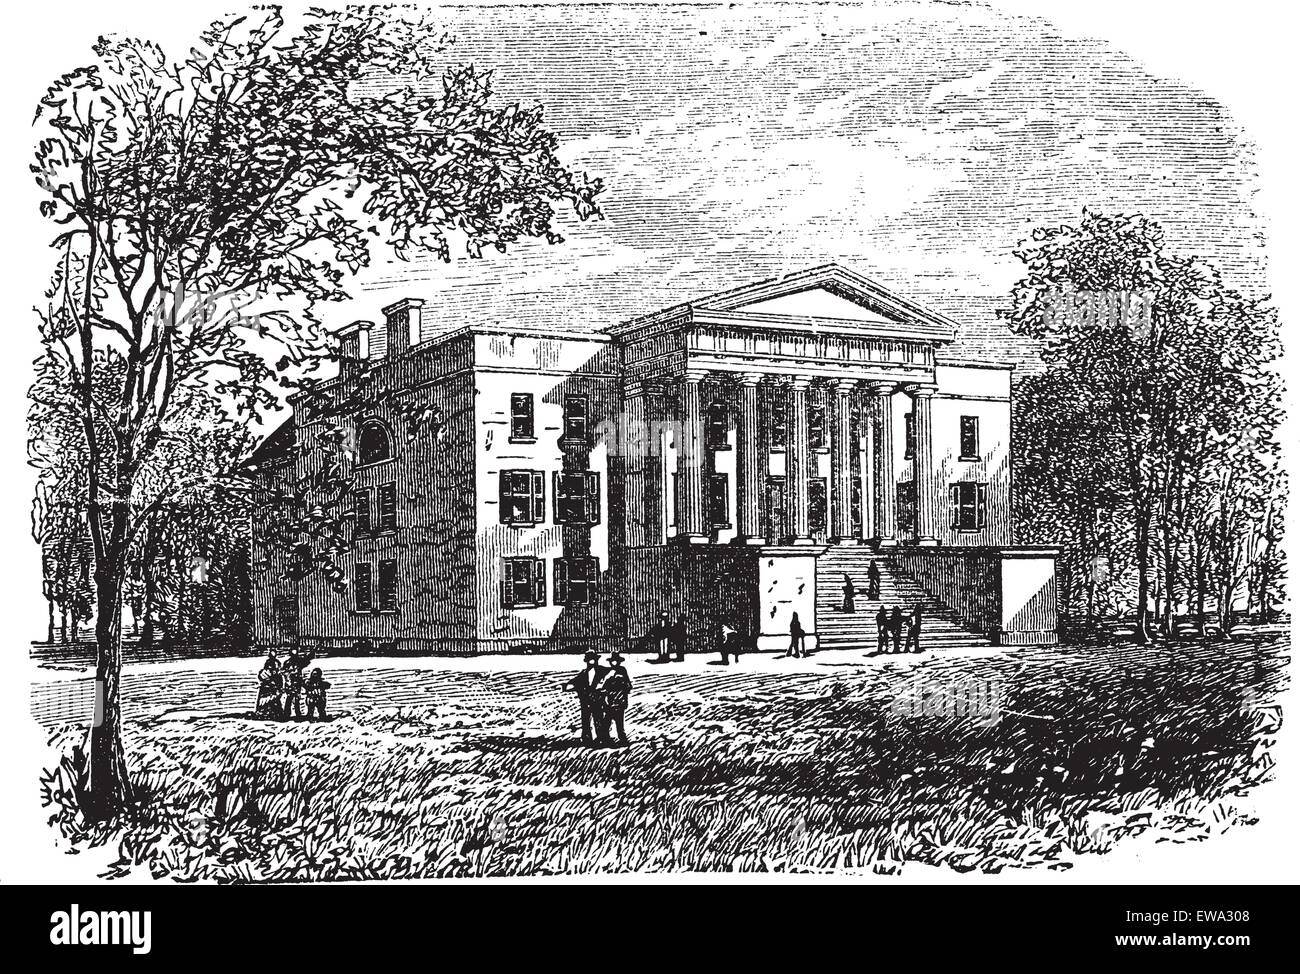 Hochschule für Künste, Universität von Kentucky, Lexington, Jahrgang graviert Abbildung. Trousset Enzyklopädie (1886-1891). Stock Vektor